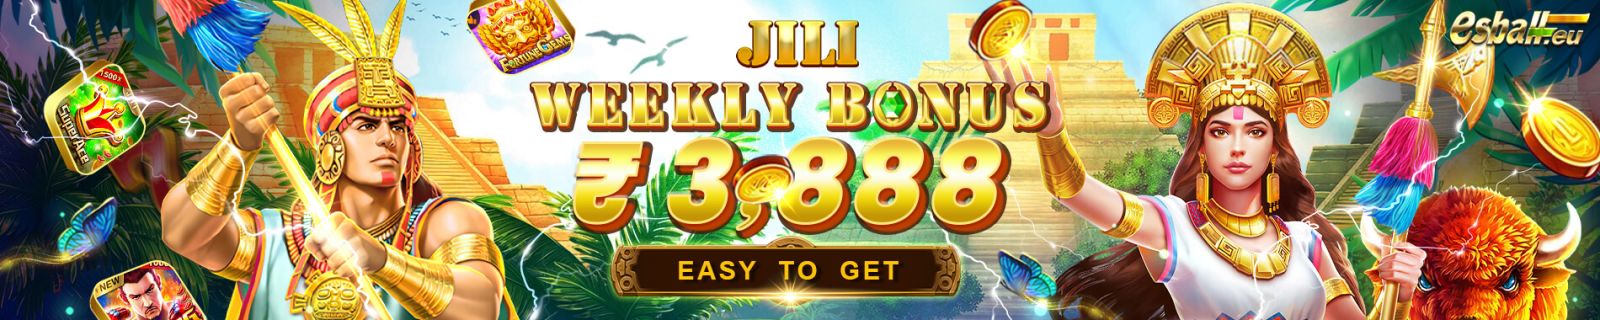 Jili Bonus, Weekly ₹3,888 Jili Slot Bonus